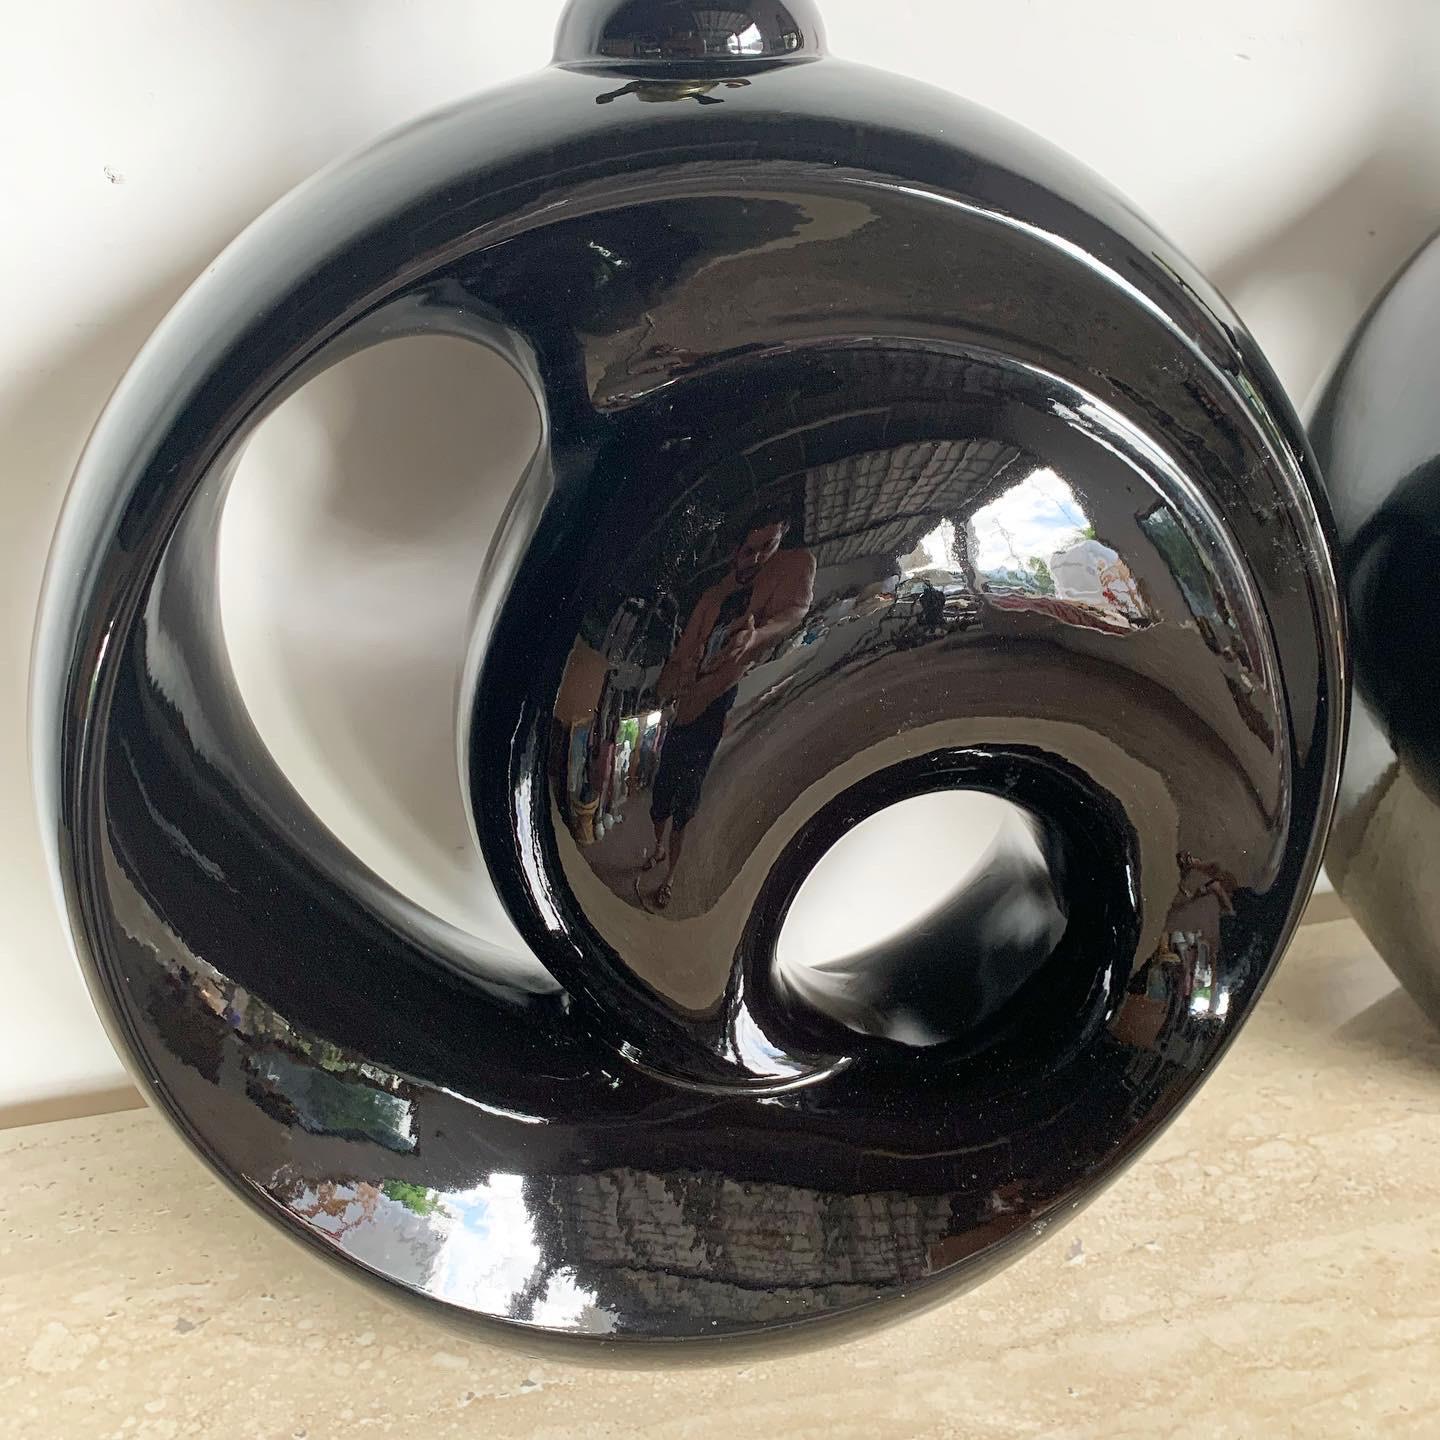 Rehaussez votre espace avec les lampes de table Postmodern Black Gloss Sculpted Swirl Ceramic, dotées d'un design élégant et d'une esthétique épurée.

Design/One sculpté en céramique noire brillante.
Il dégage une impression de mouvement et de